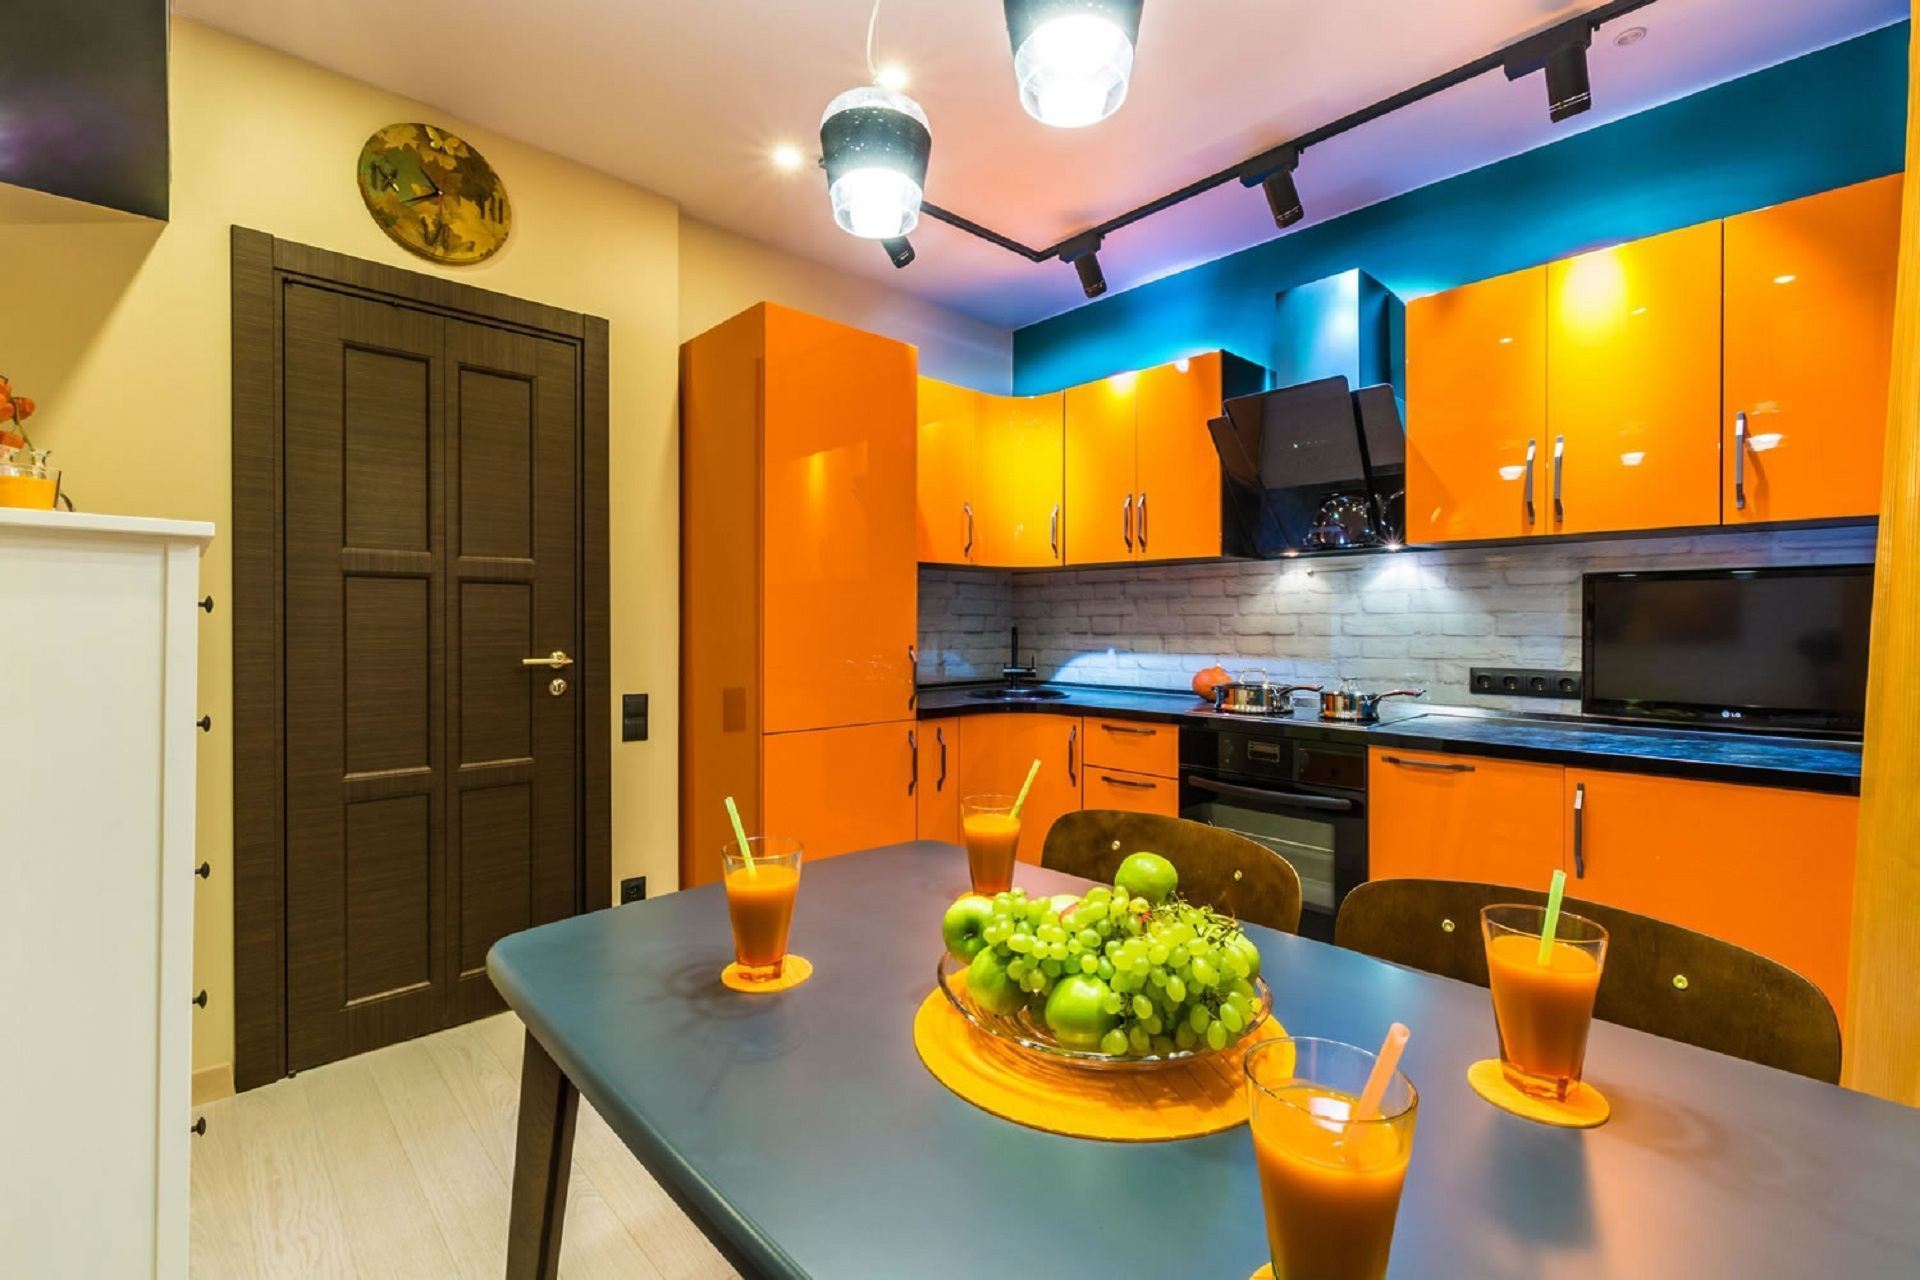 Ярки ремонтные. Яркая кухня. Яркий интерьер кухни. Кухня в ярких тонах. Кухни оранжевого цвета.